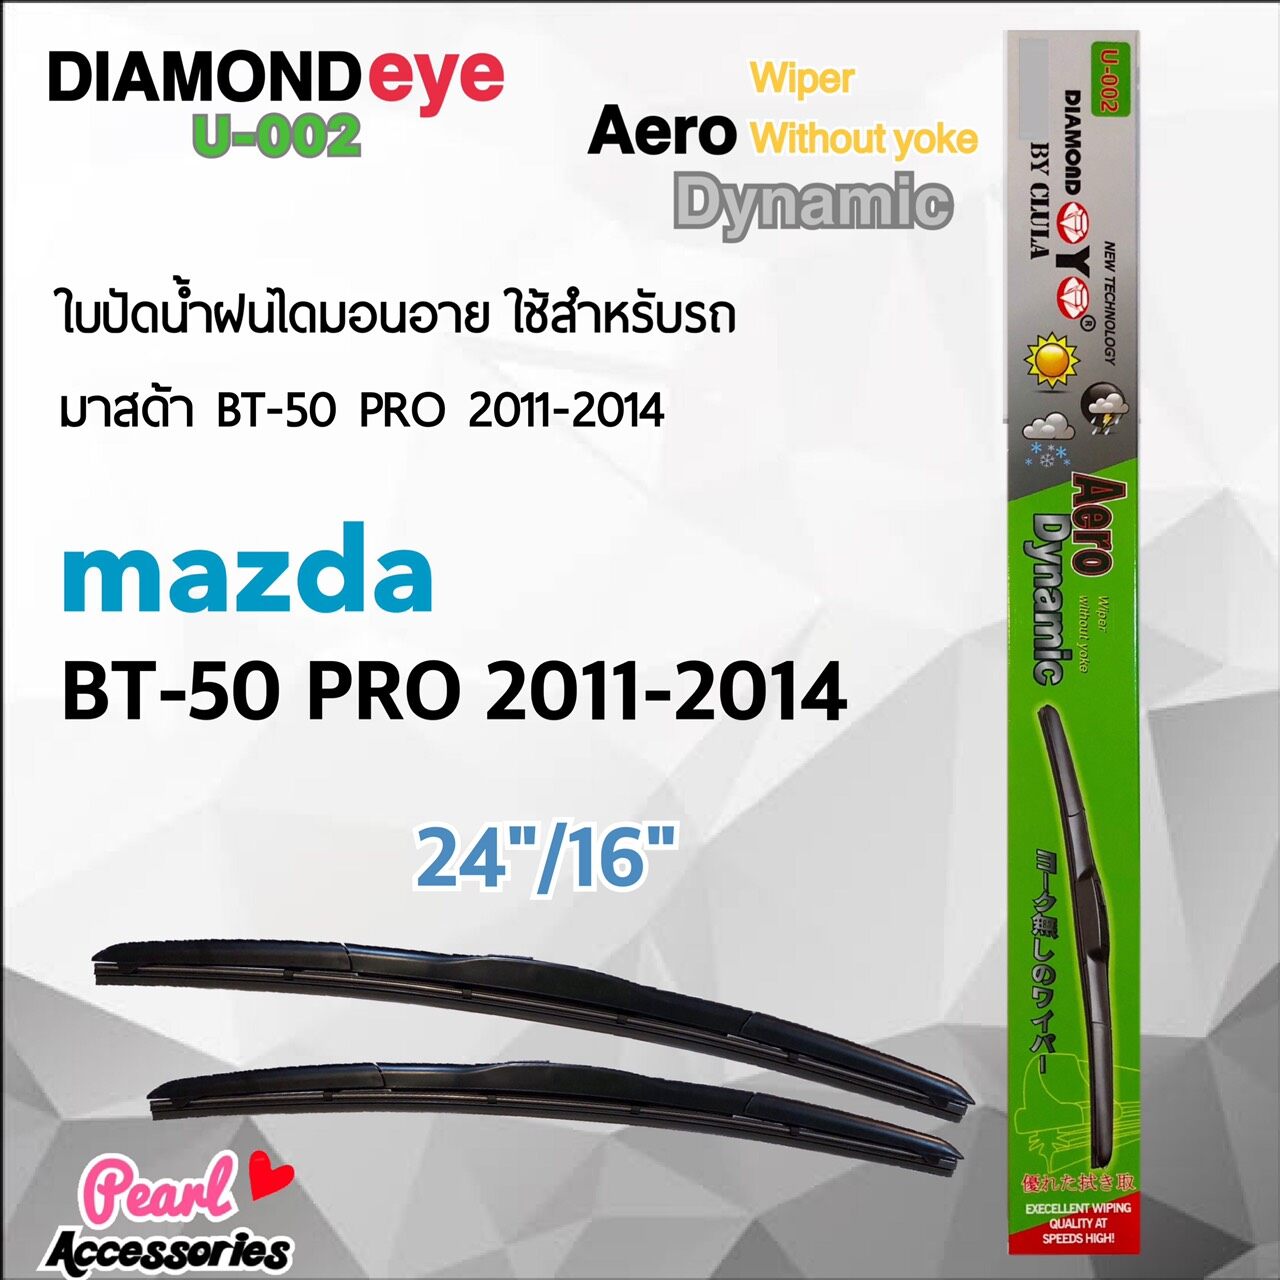 Diamond Eye 002 ใบปัดน้ำฝน มาสด้า BT-50 Pro 2011-2014 ขนาด 24”/16” นิ้ว Wiper Blade for Mazda BT-50 Pro 2011-2014 Size 24”/ 16”